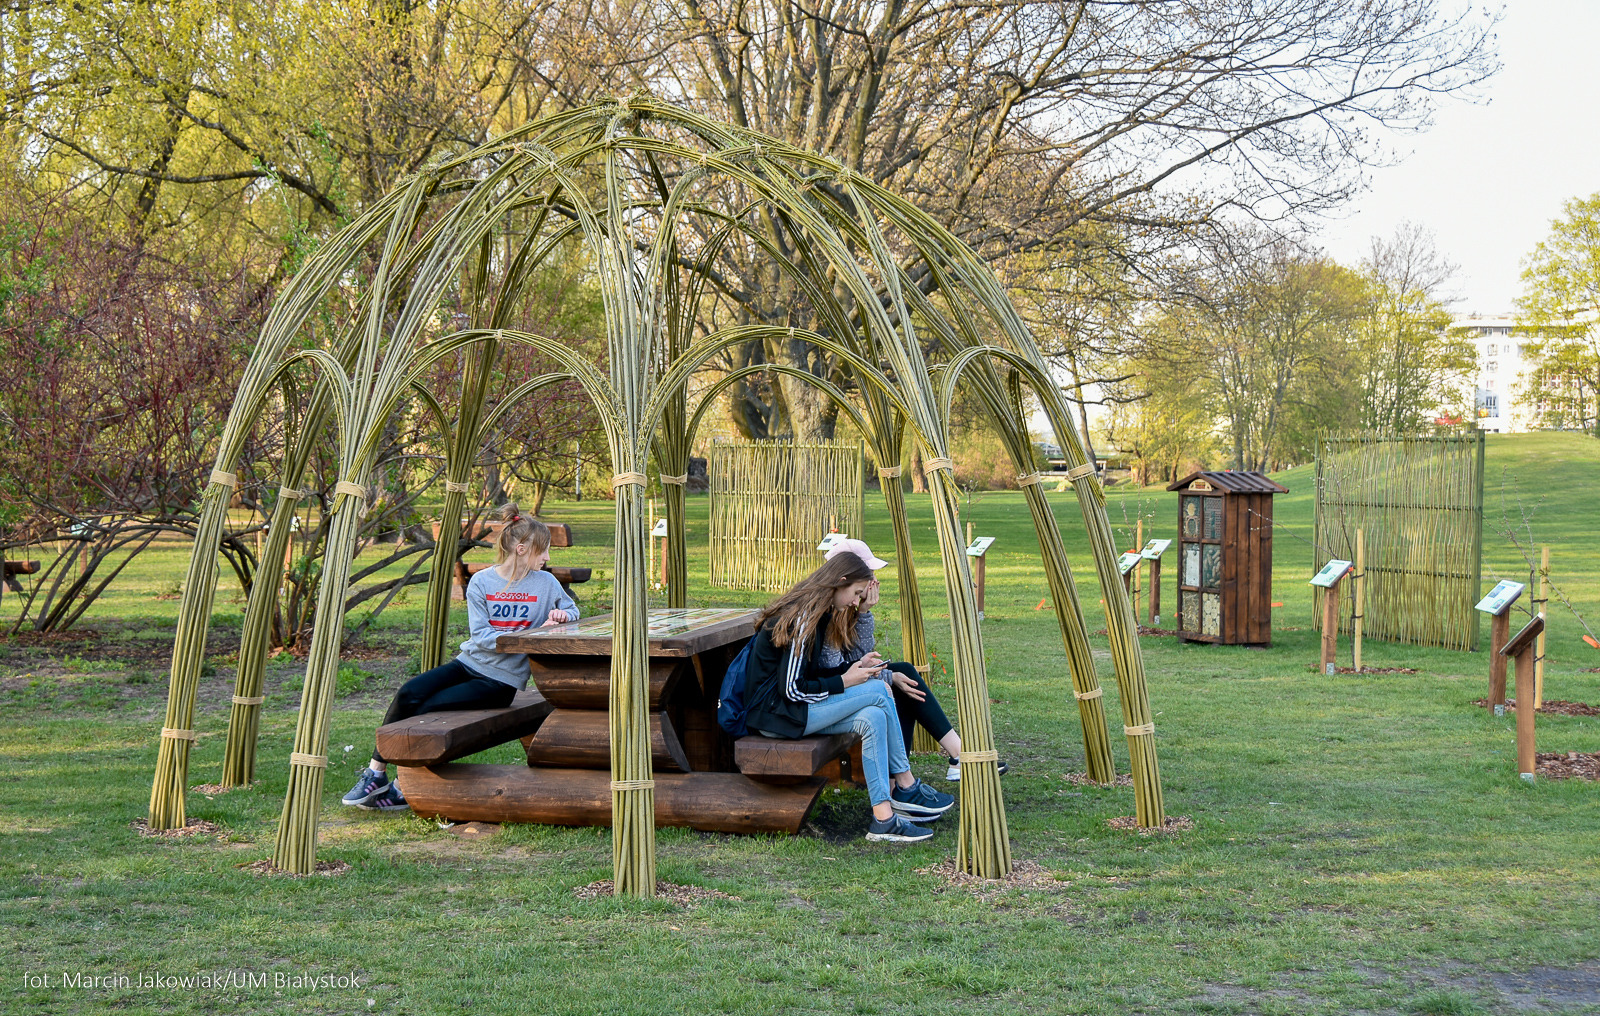 Park, ludzie siedzą na ławkach, pod konstrukcją zrobioną z traw, gałęzi